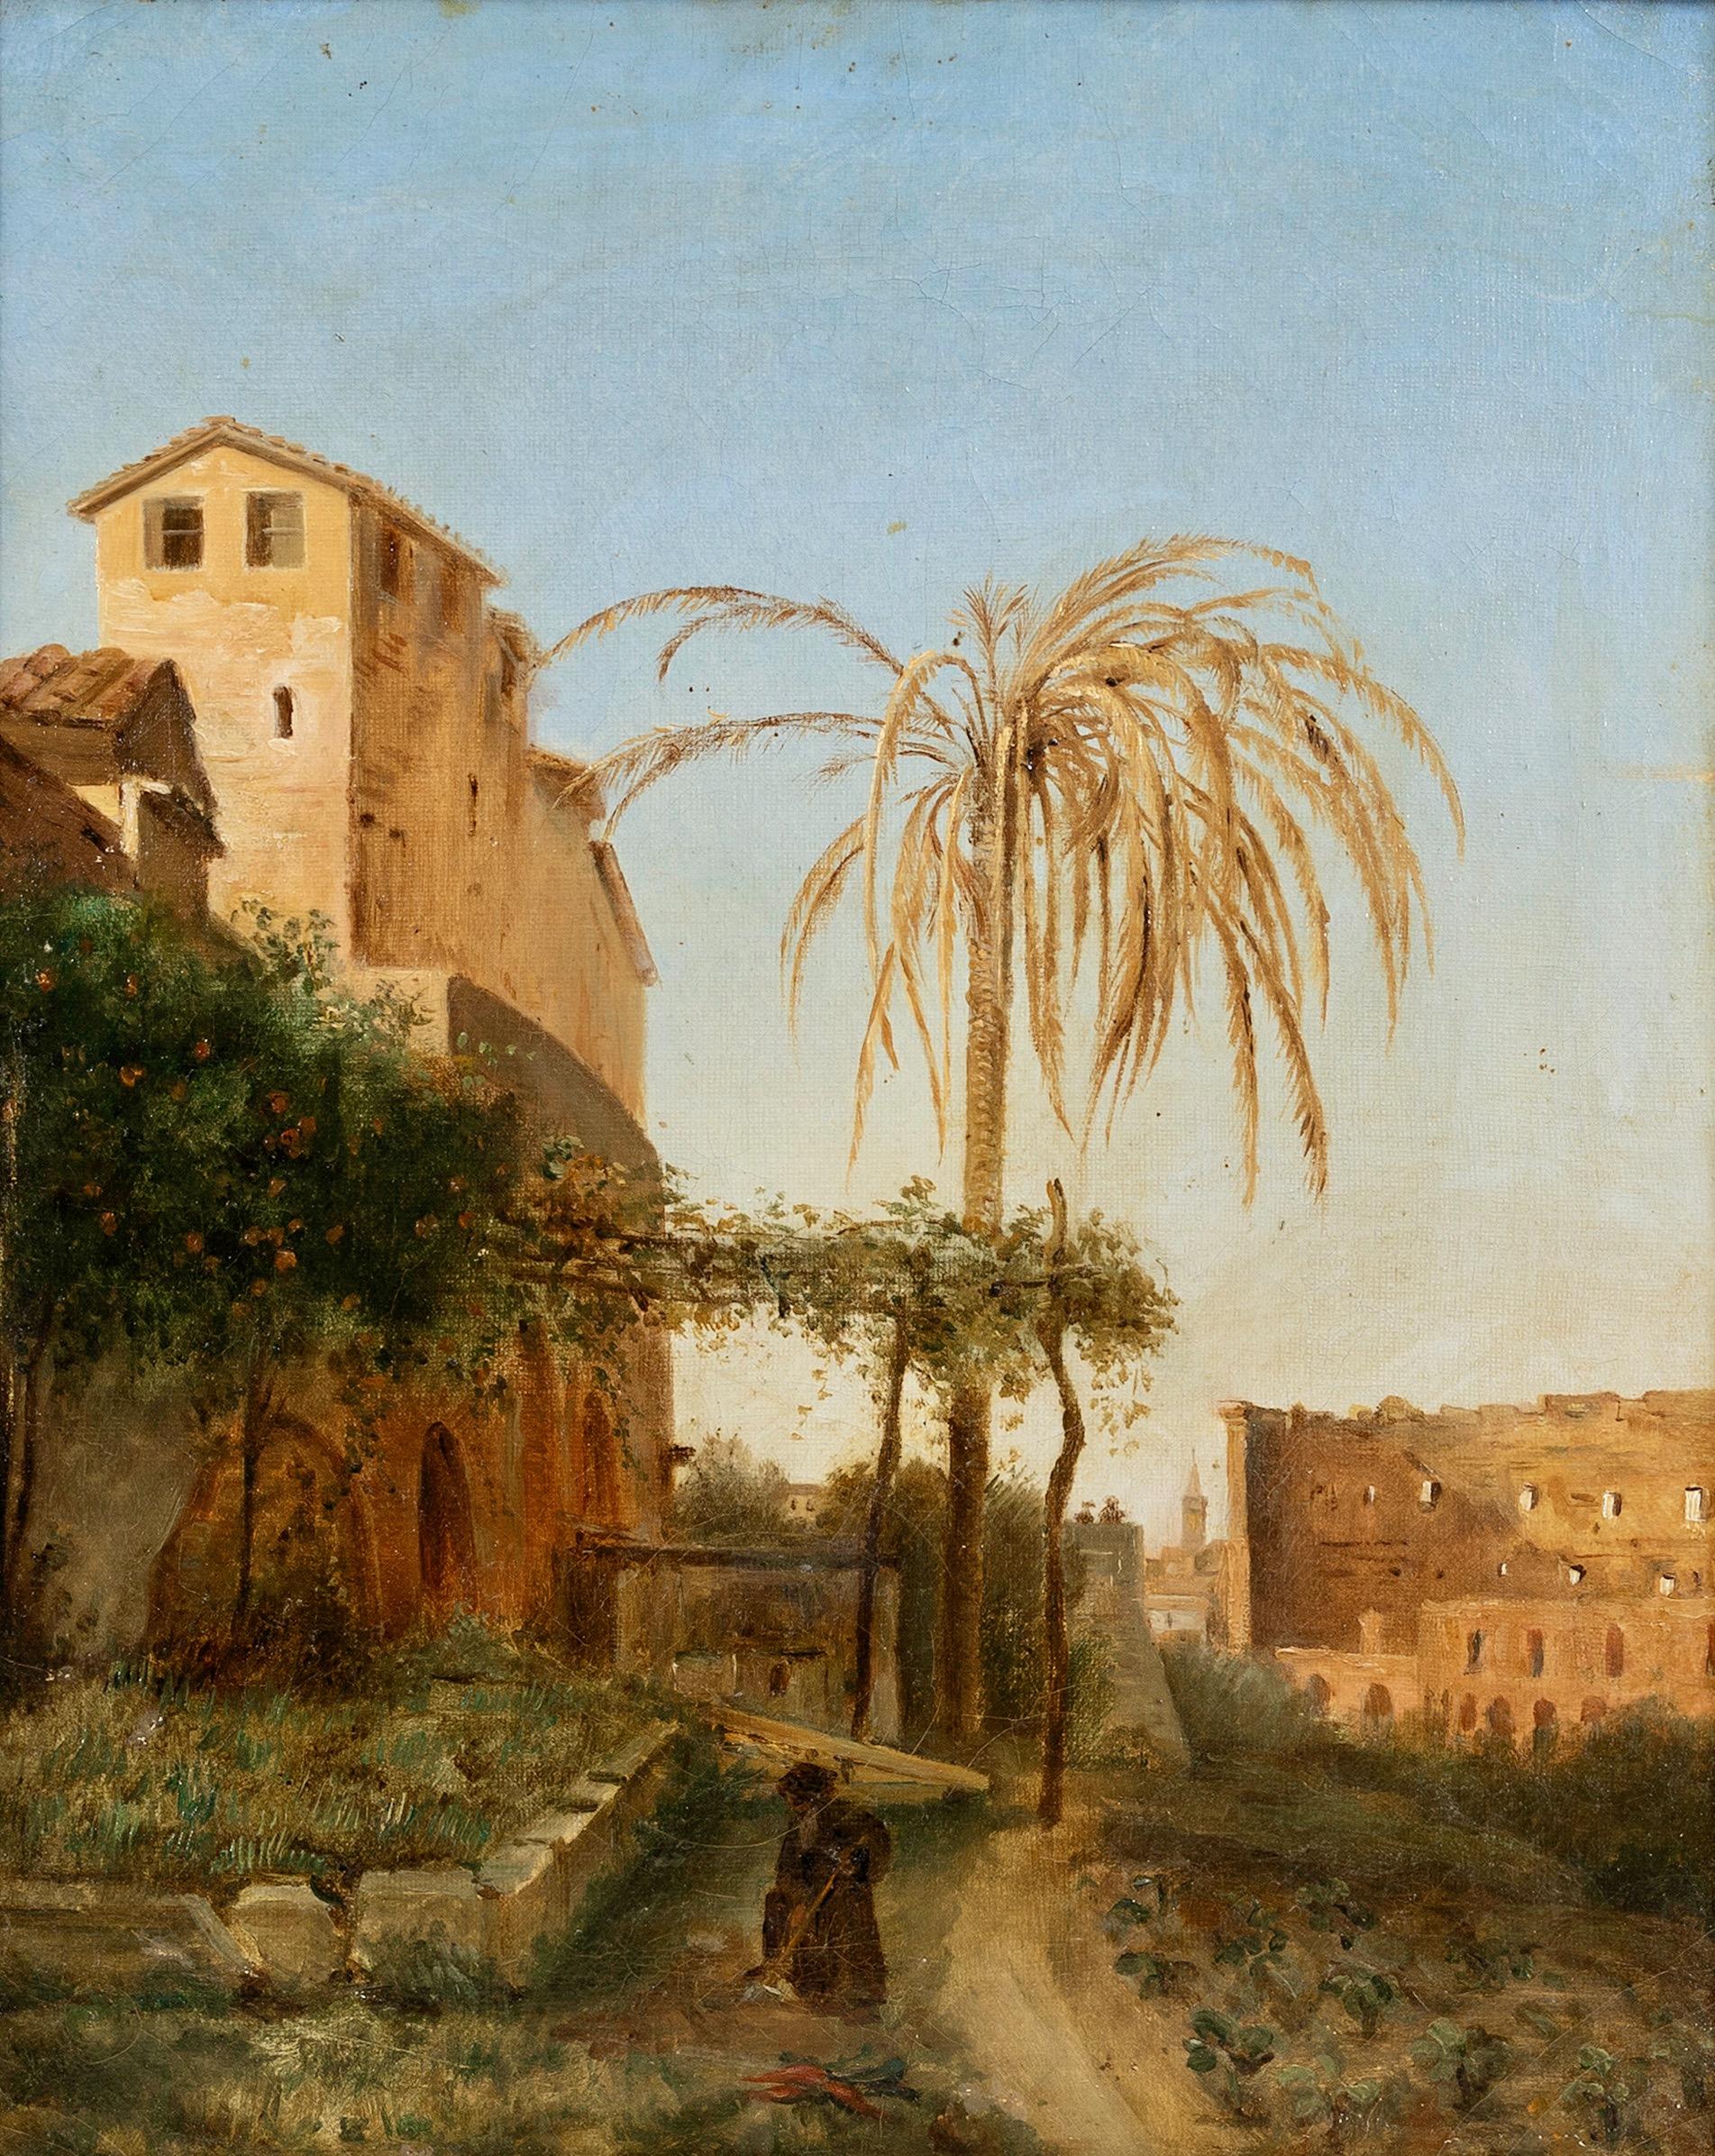 Das Kolosseum und San Bonaventura al Palatino von seinem Garten aus gesehen.  – Painting von Unknown